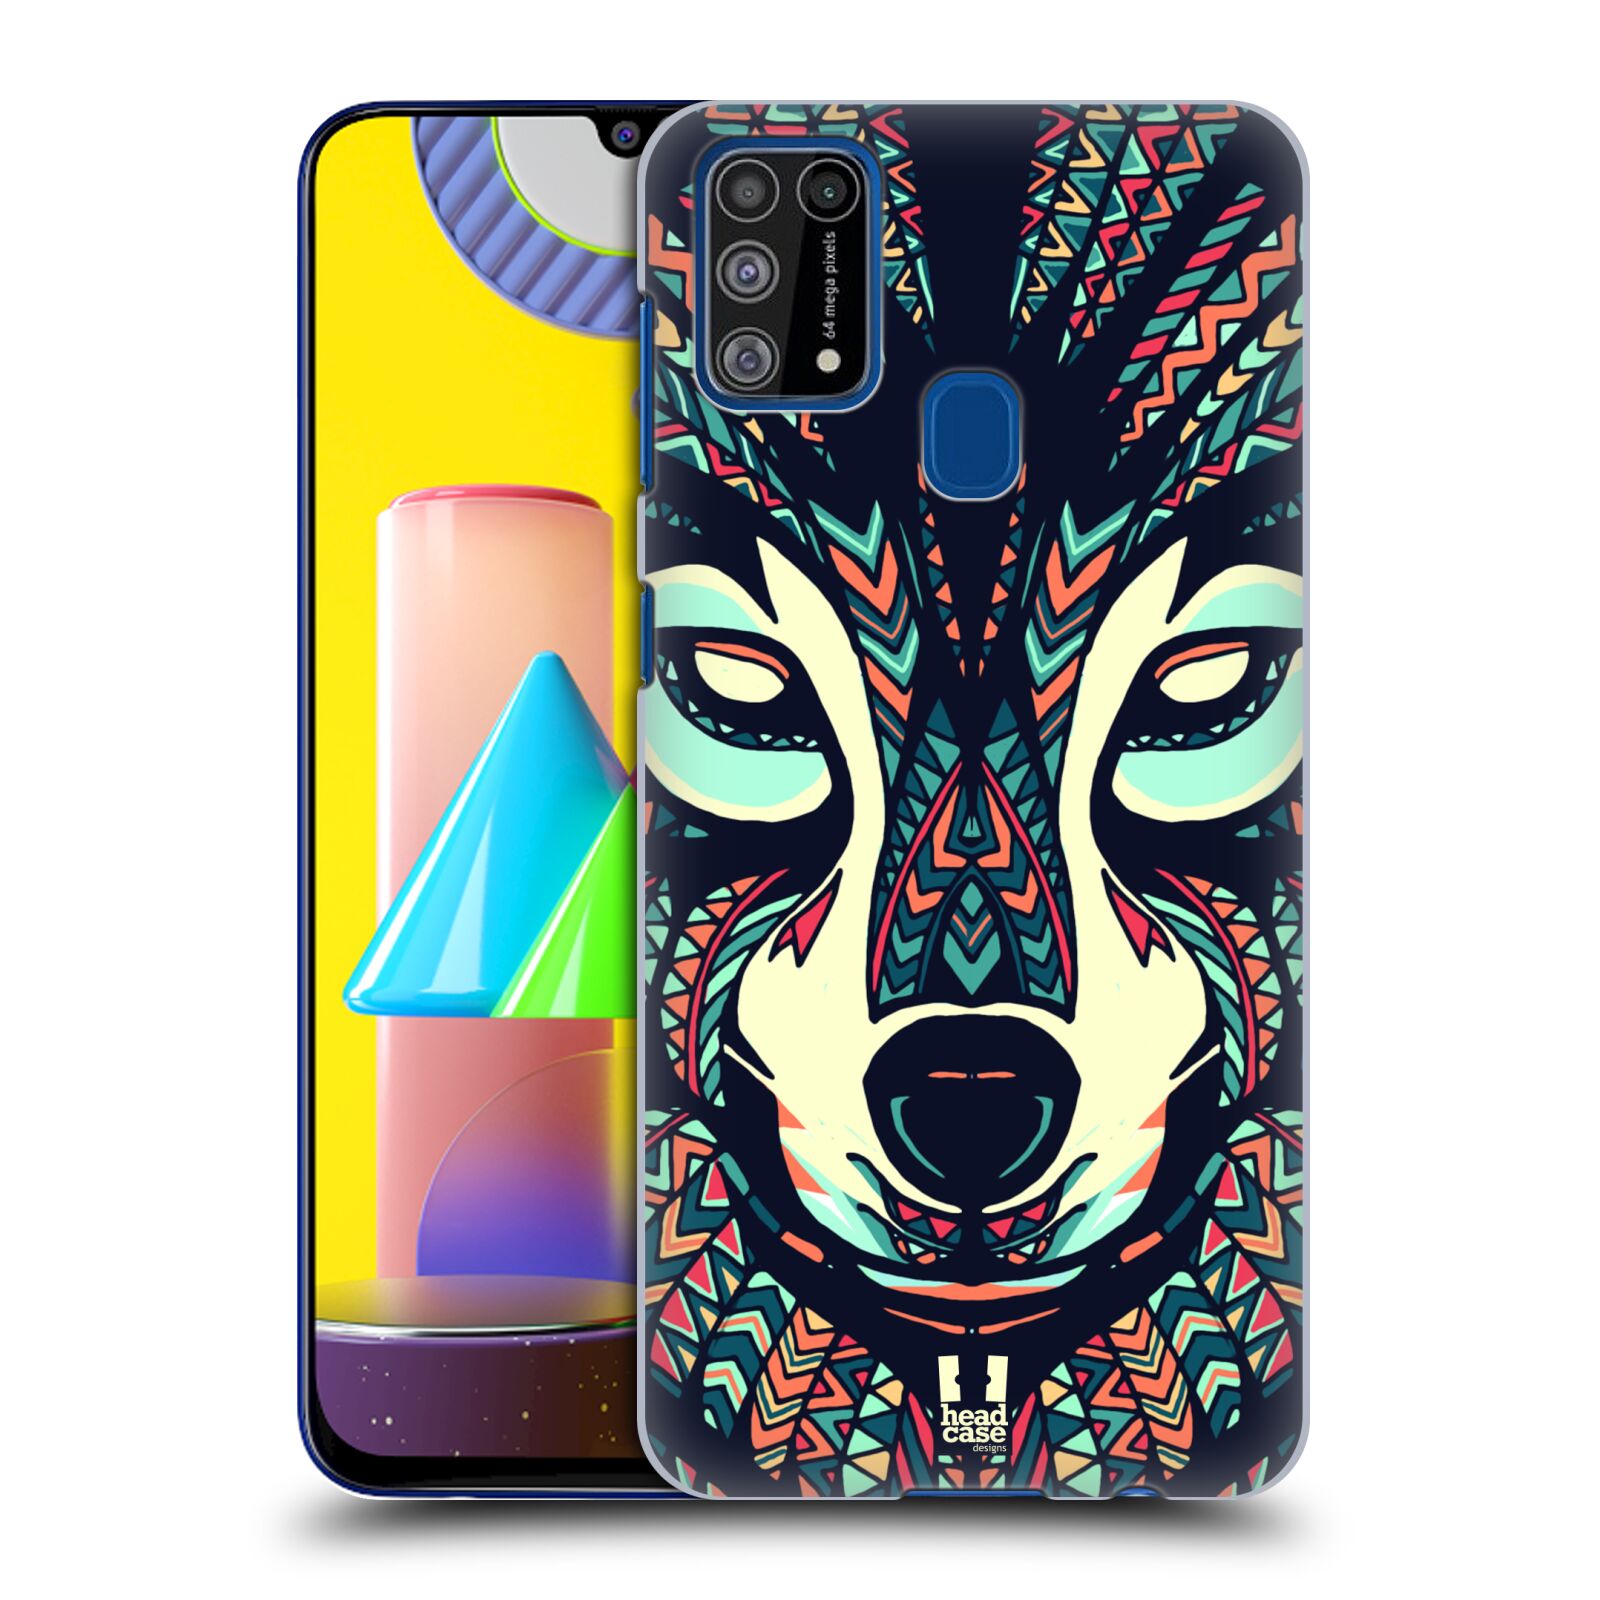 Plastový obal HEAD CASE na mobil Samsung Galaxy M31 vzor Aztécký motiv zvíře 3 vlk